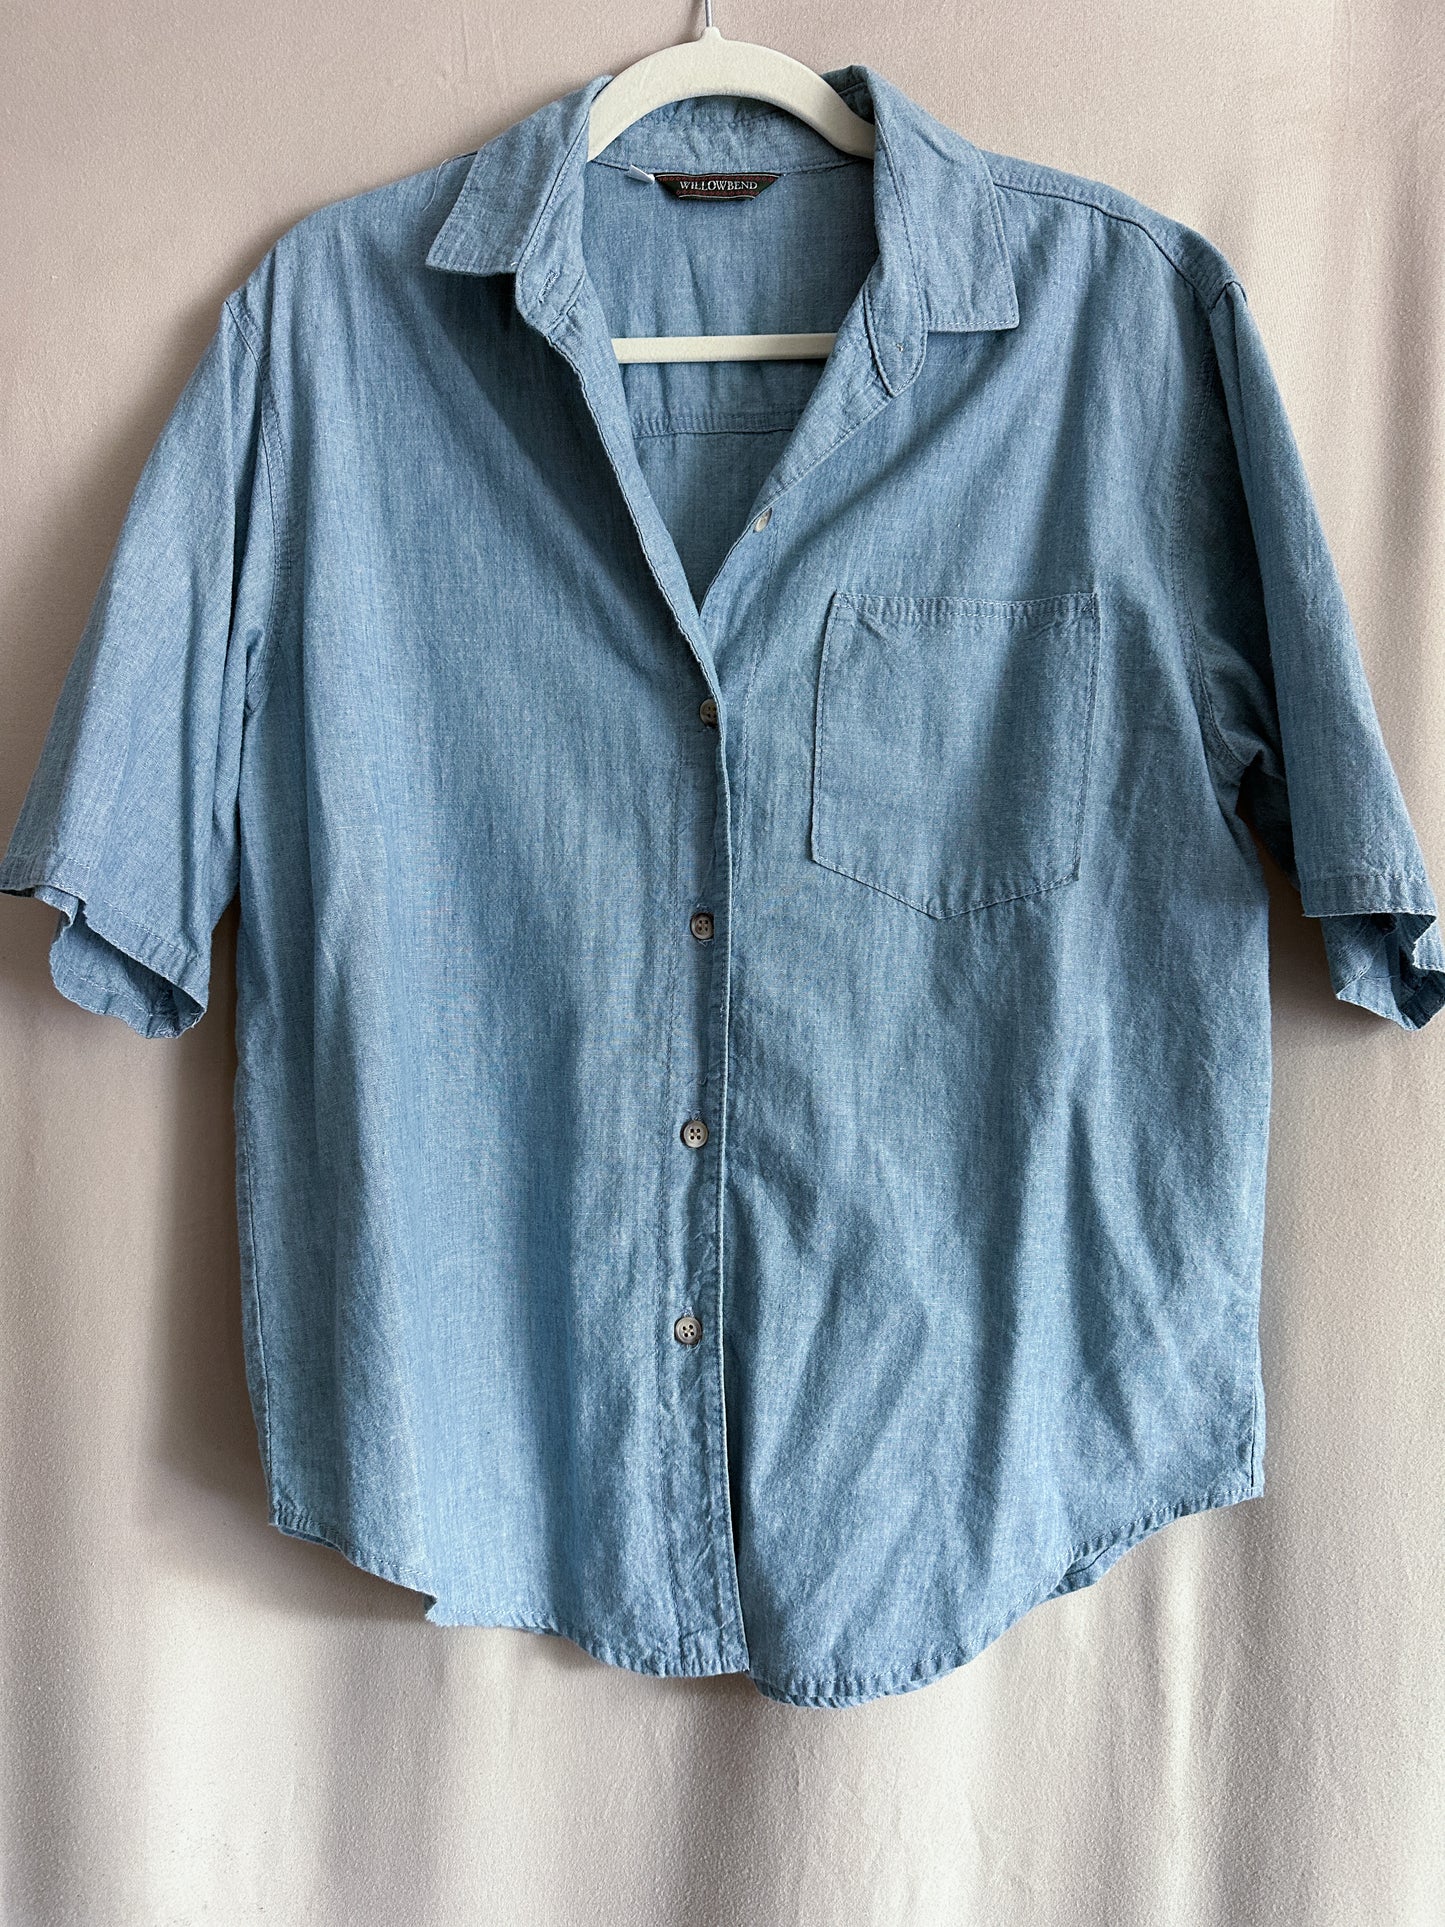 Vintage Cotton Short Sleeve Denim Shirt (fits S-L)